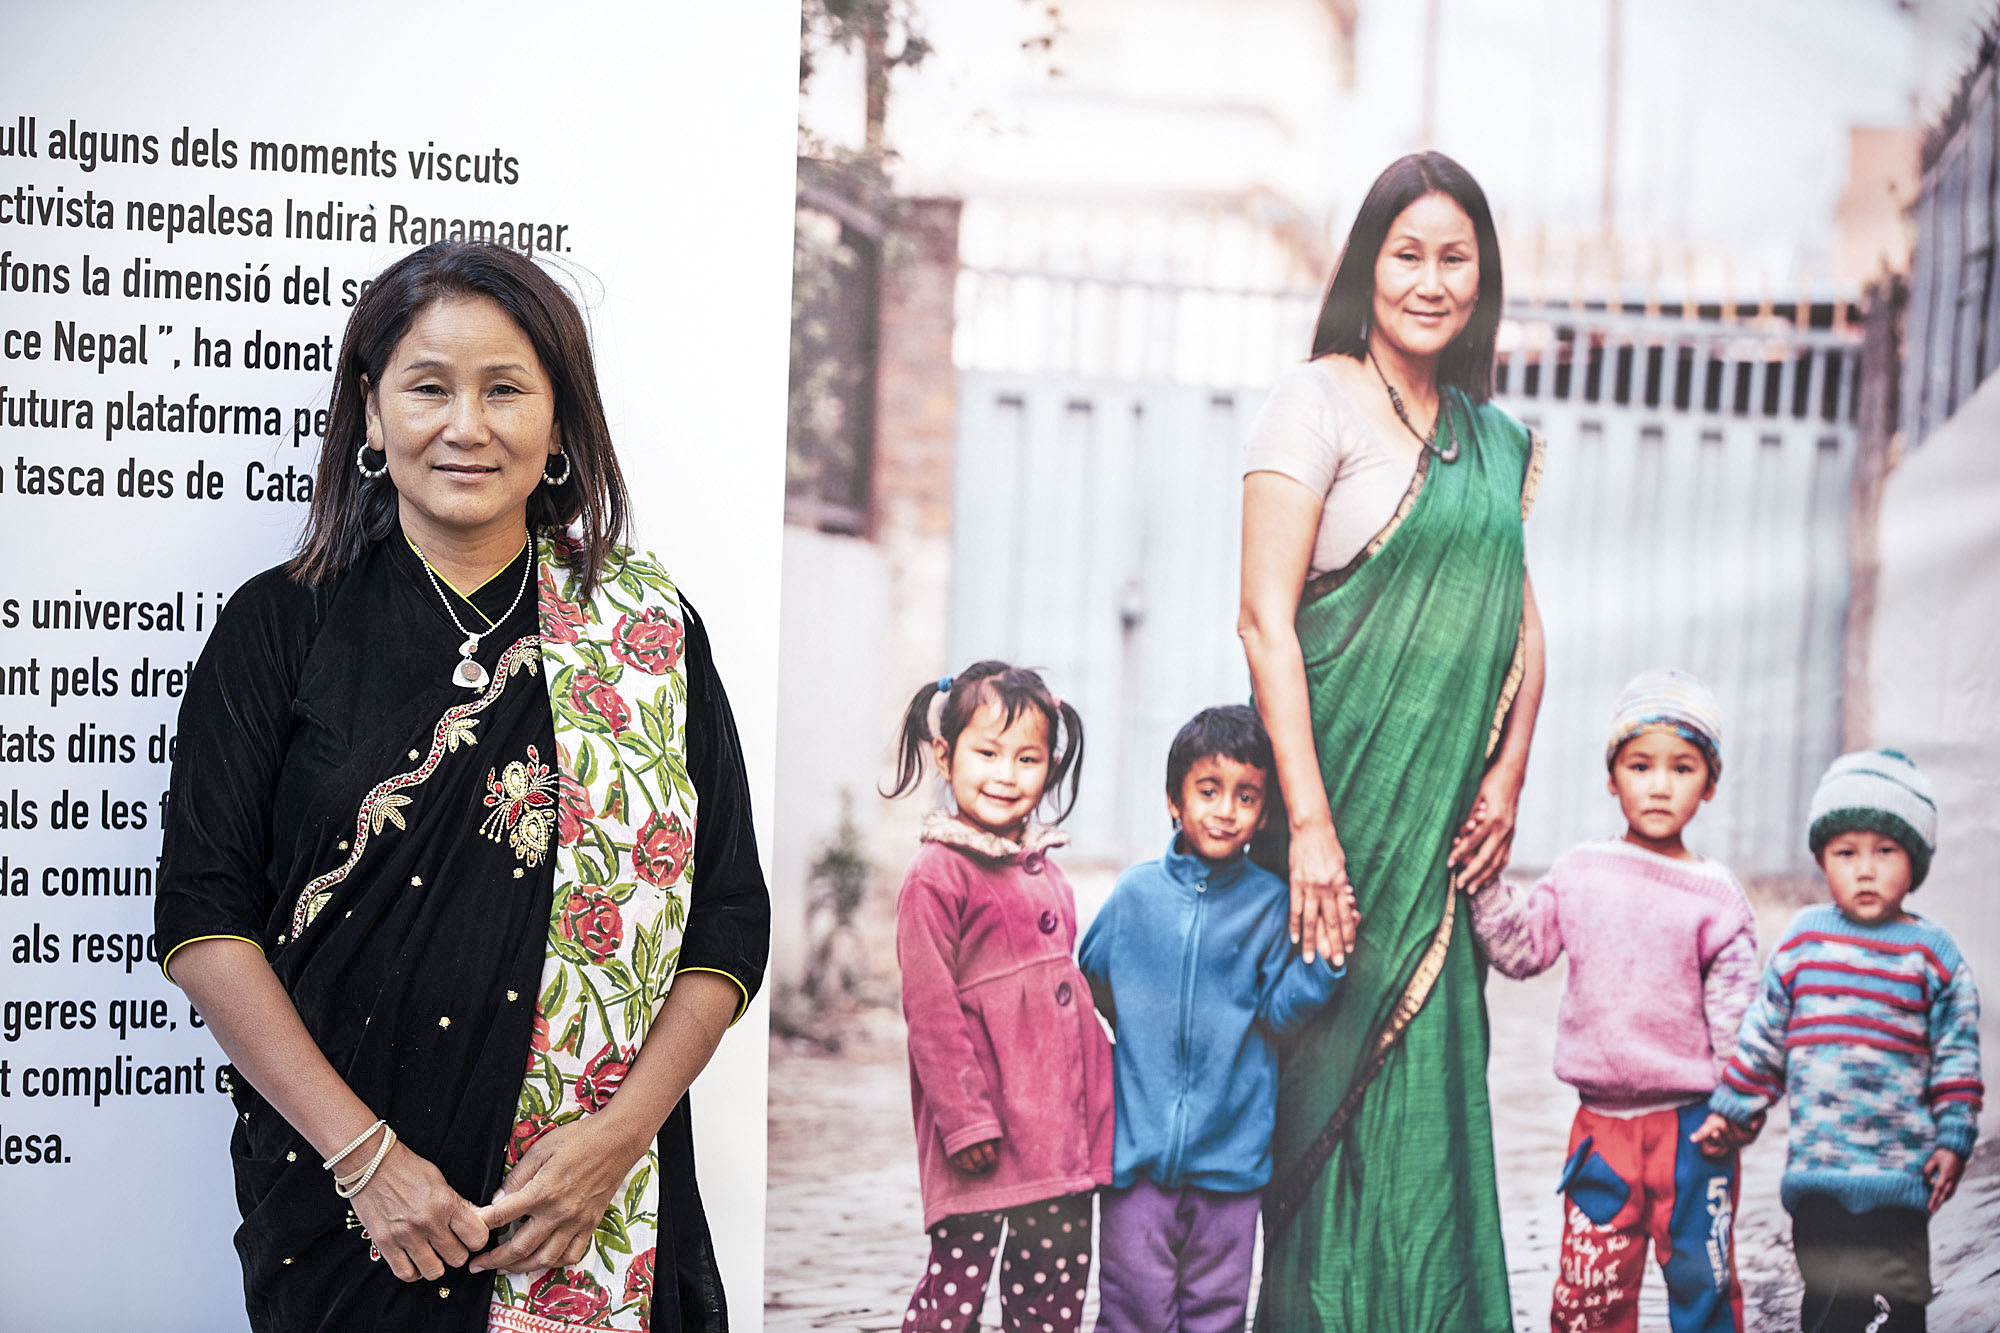 Indira Ranamagar davant d’un plafó informatiu de les activitats que realitza Prisoners Assistance Nepal